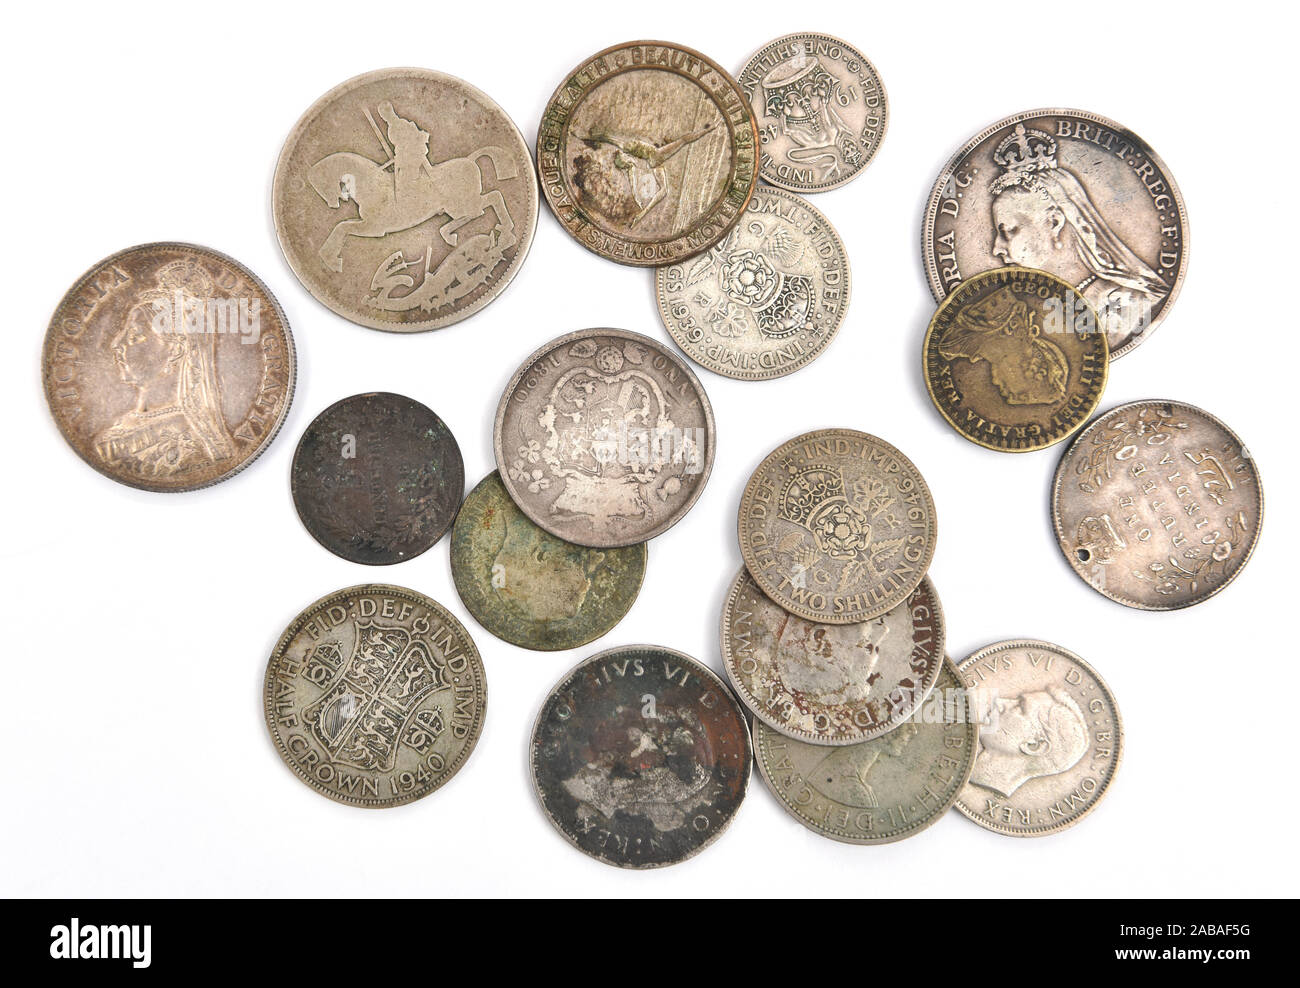 Viejo, empañada, mayoritariamente británico monedas Foto de stock